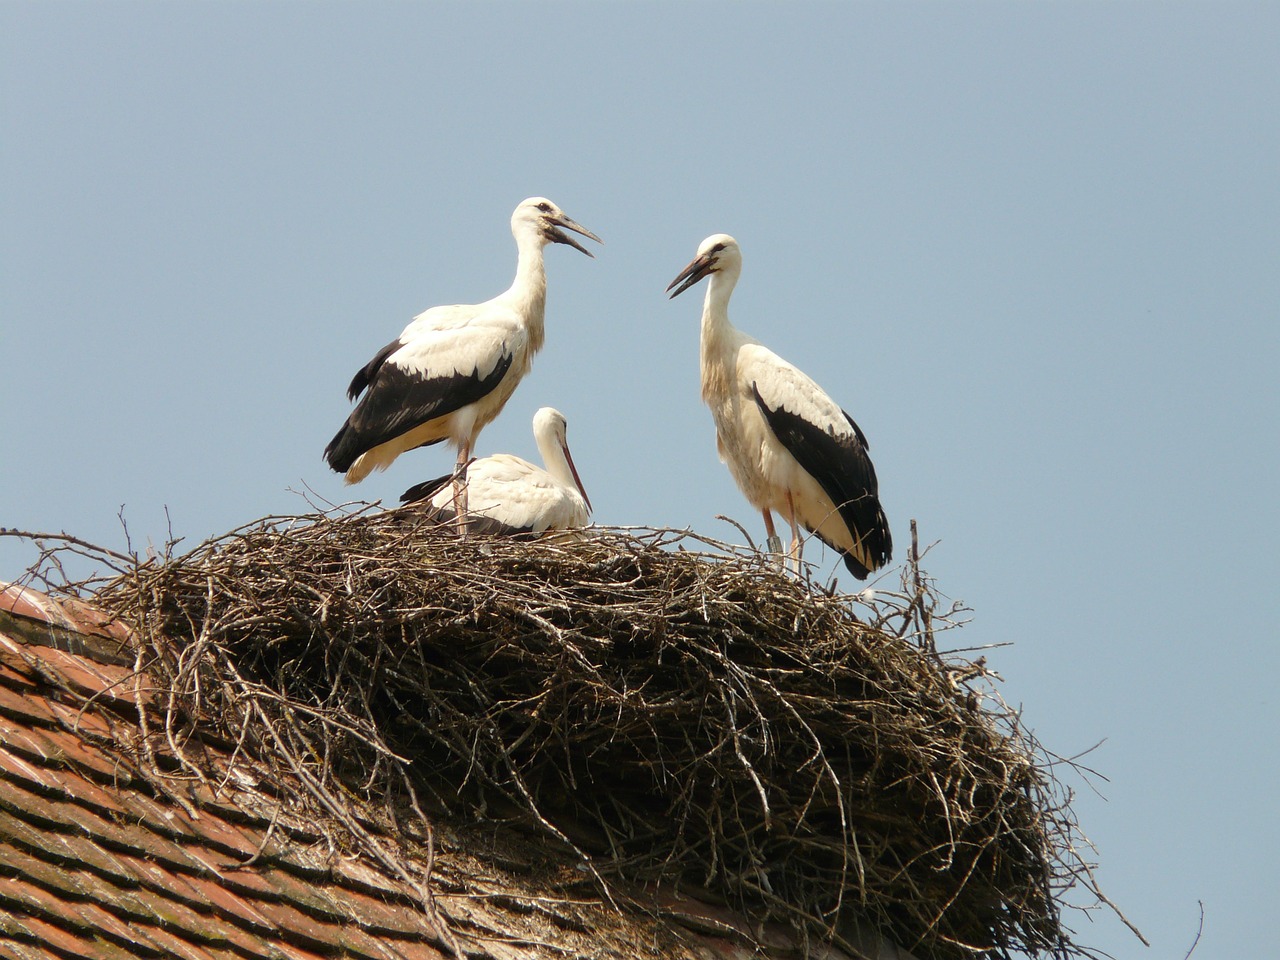 stork storchennest bird free photo